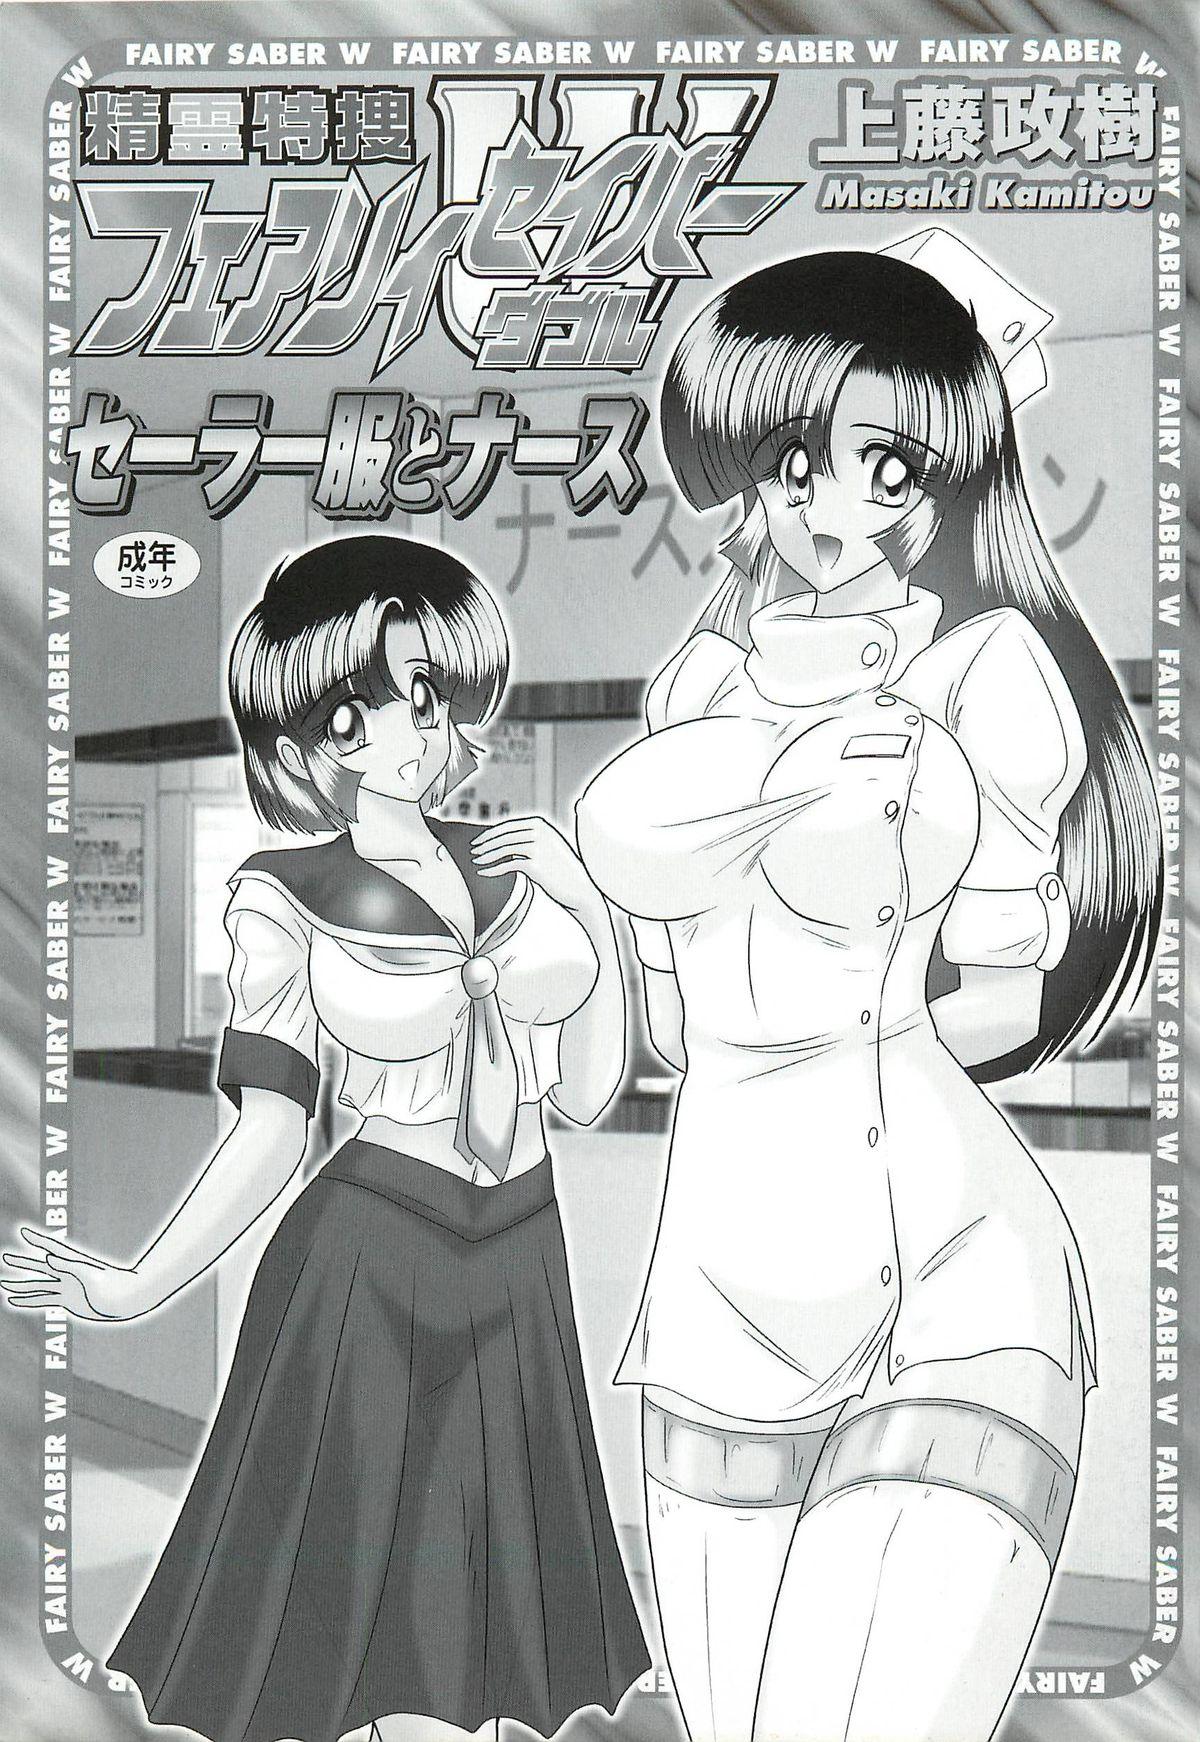 White Chick Seirei Tokusou Fairy Saber W - Sailor Fuku to Nurse Natural Boobs - Page 3